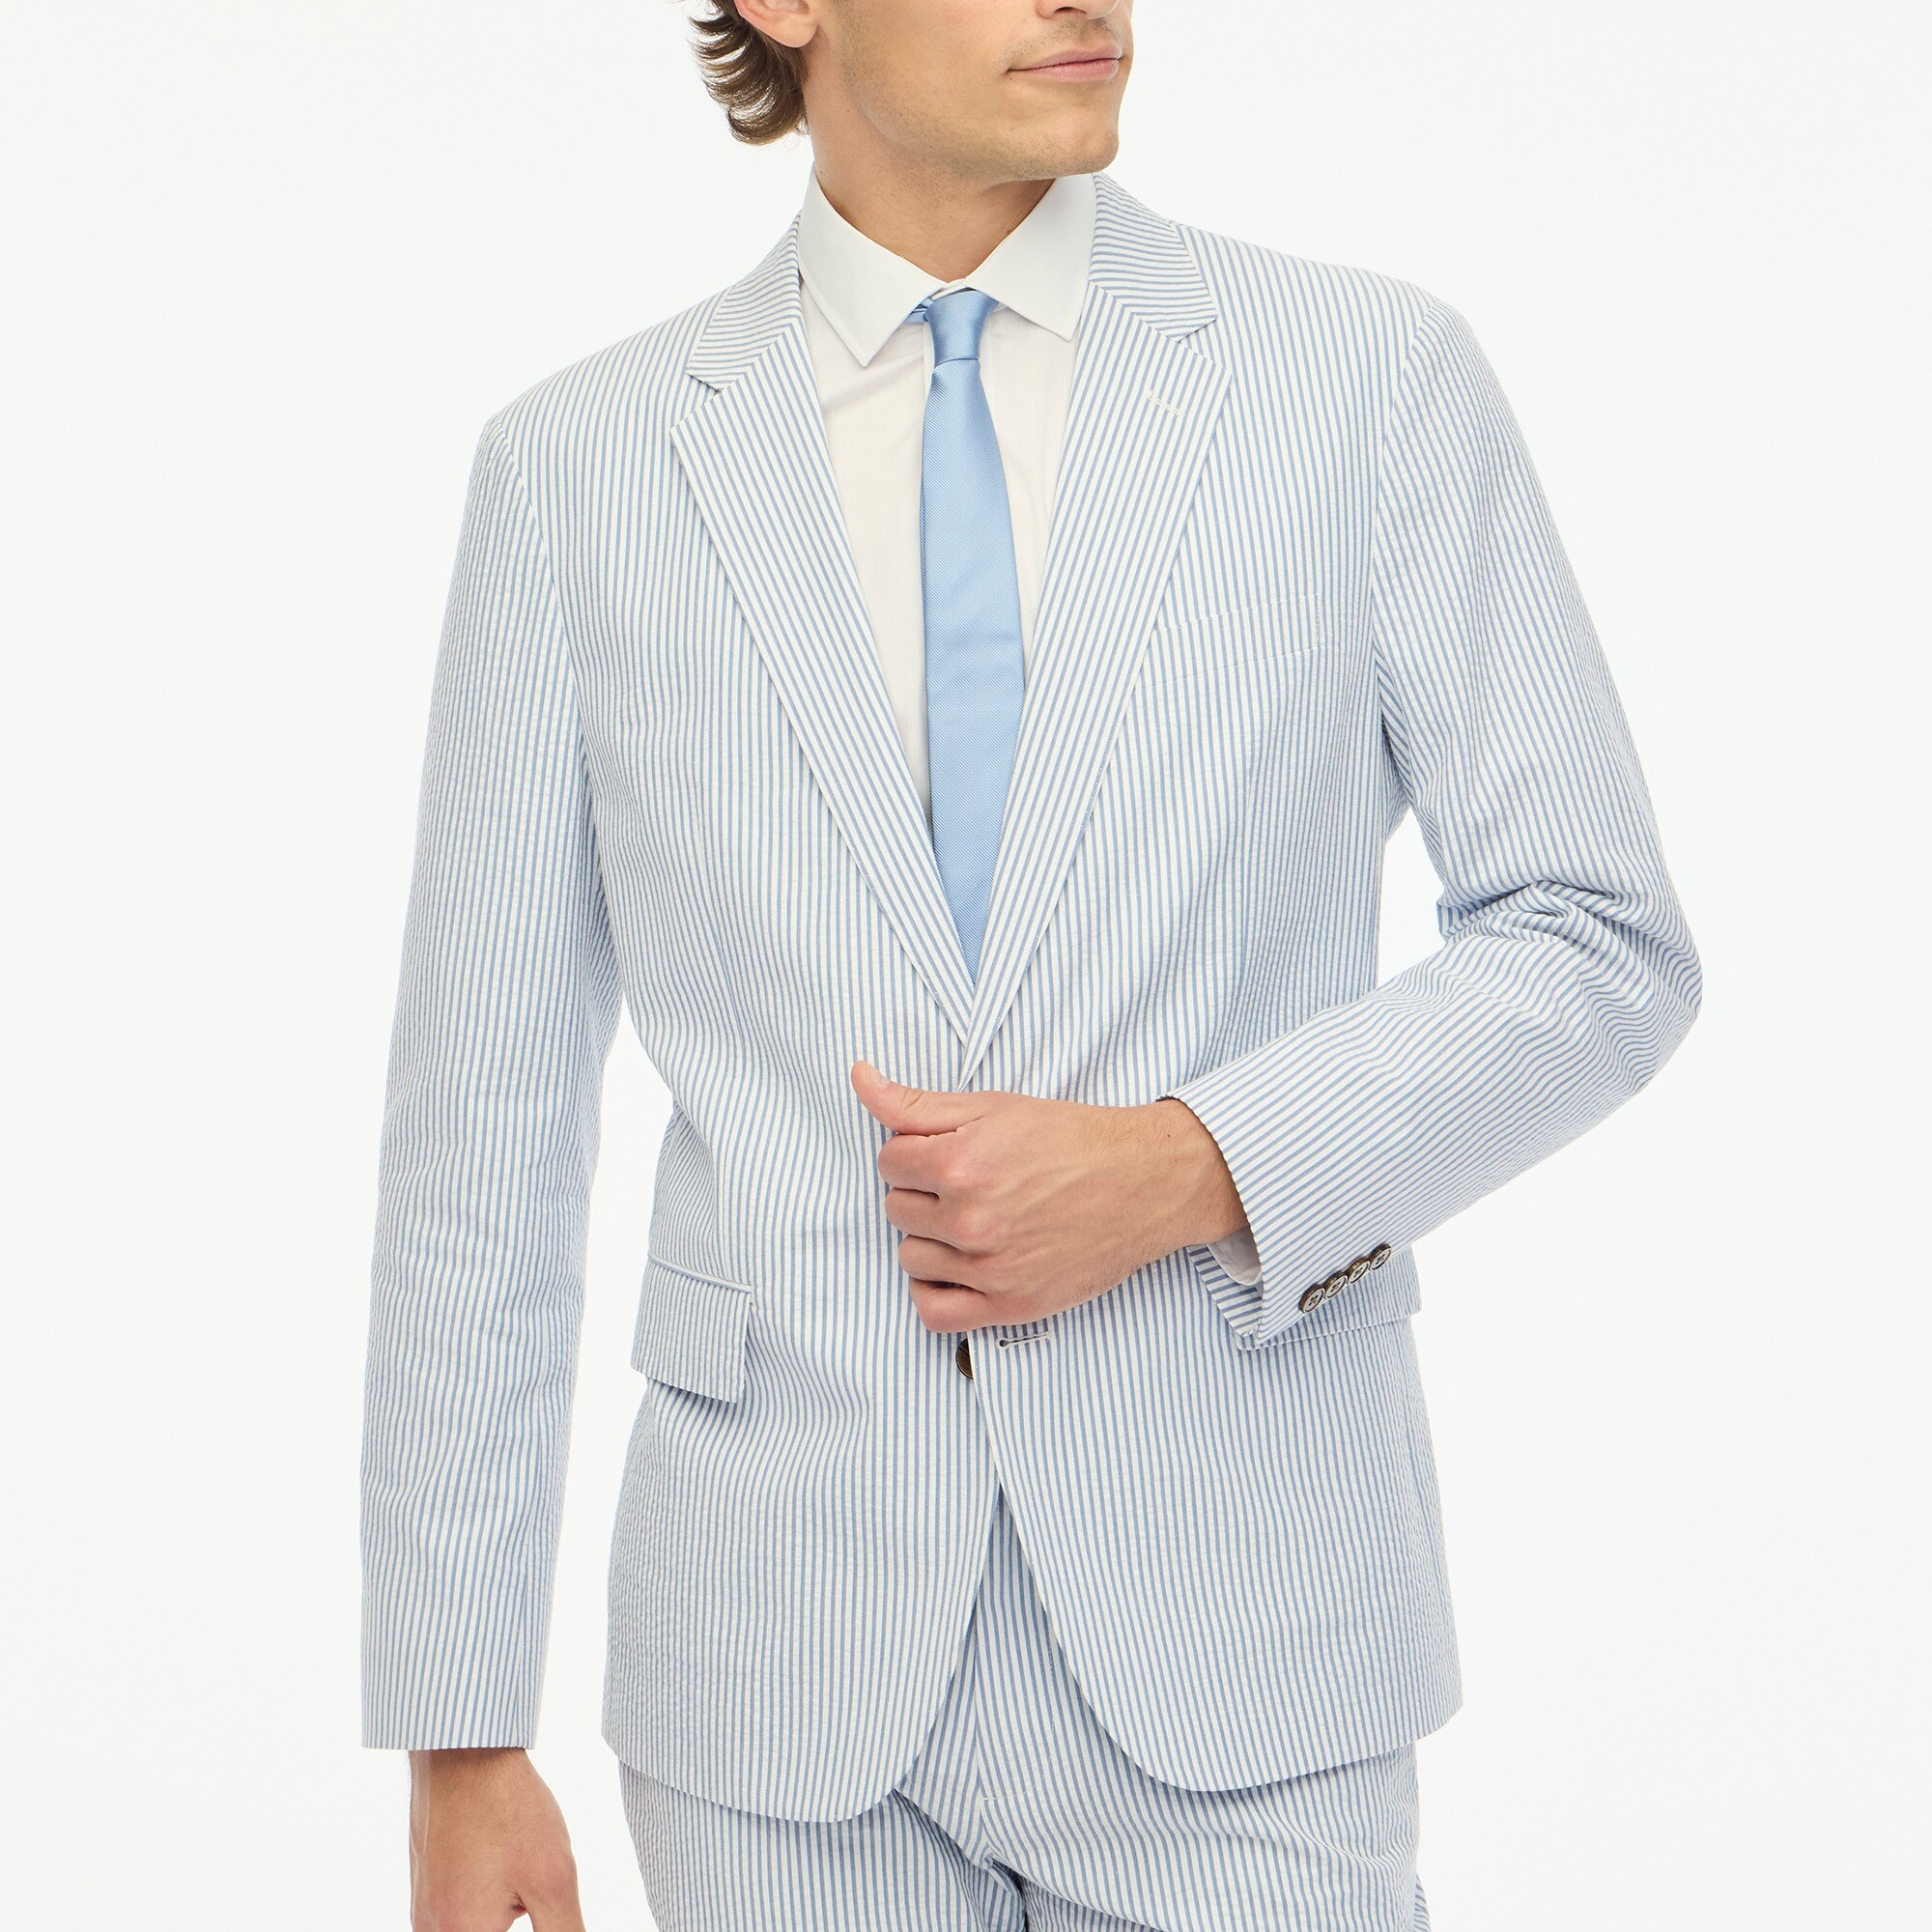 mens Slim unstructured Thompson suit jacket in seersucker